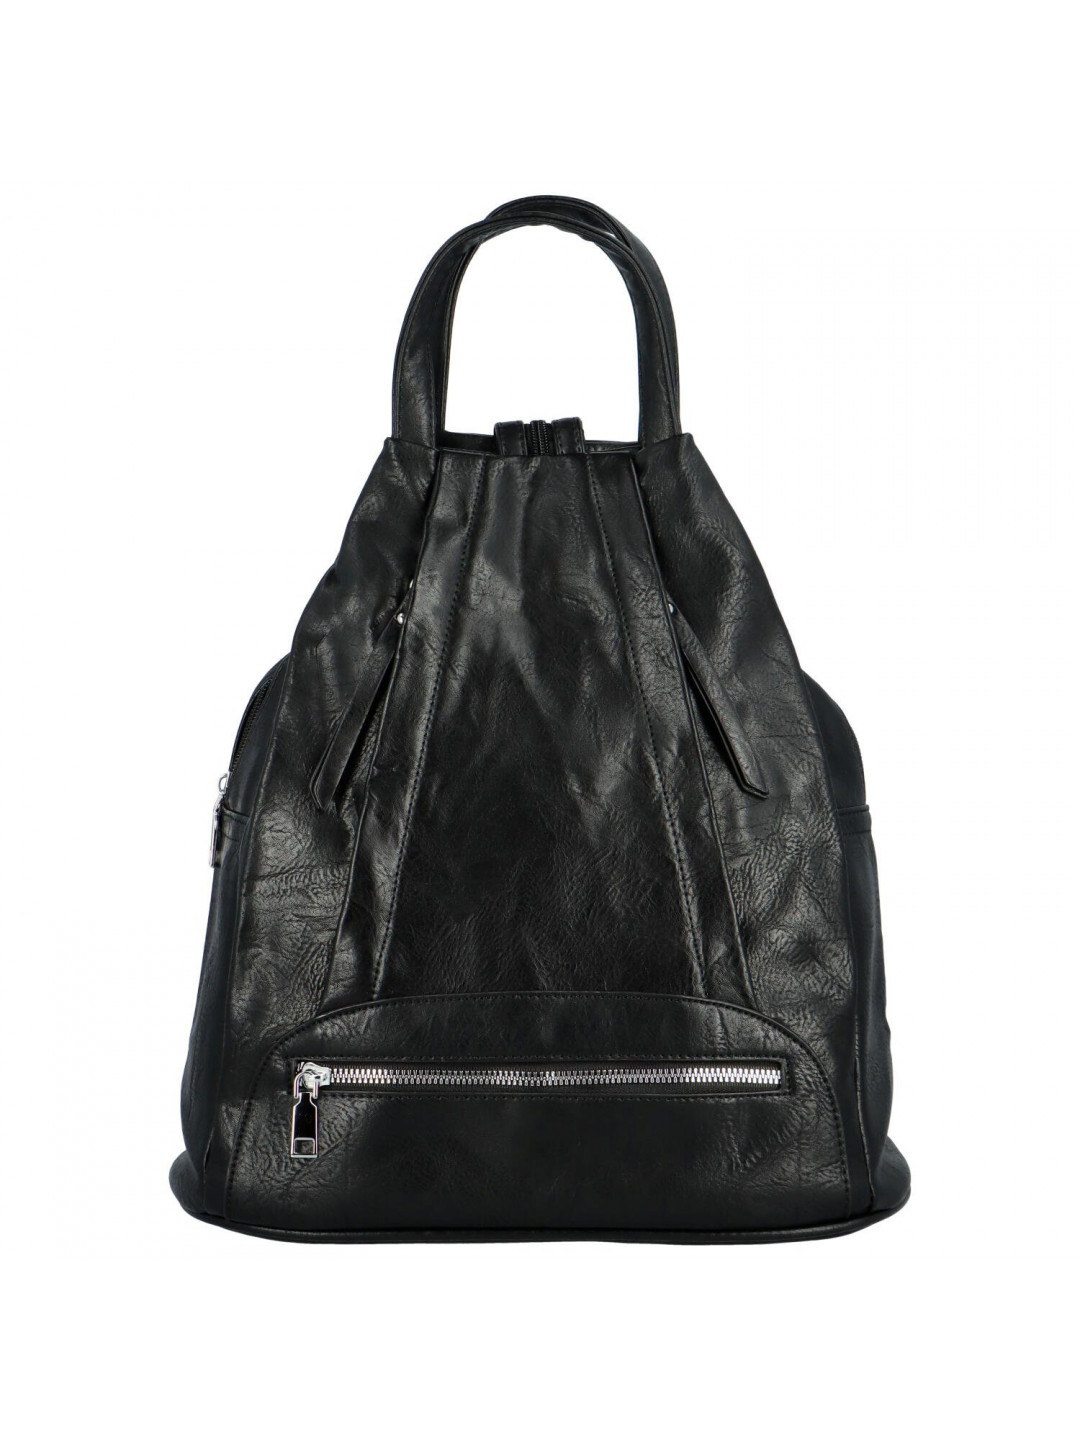 Trendy dámský koženkový batůžek Coleta černý